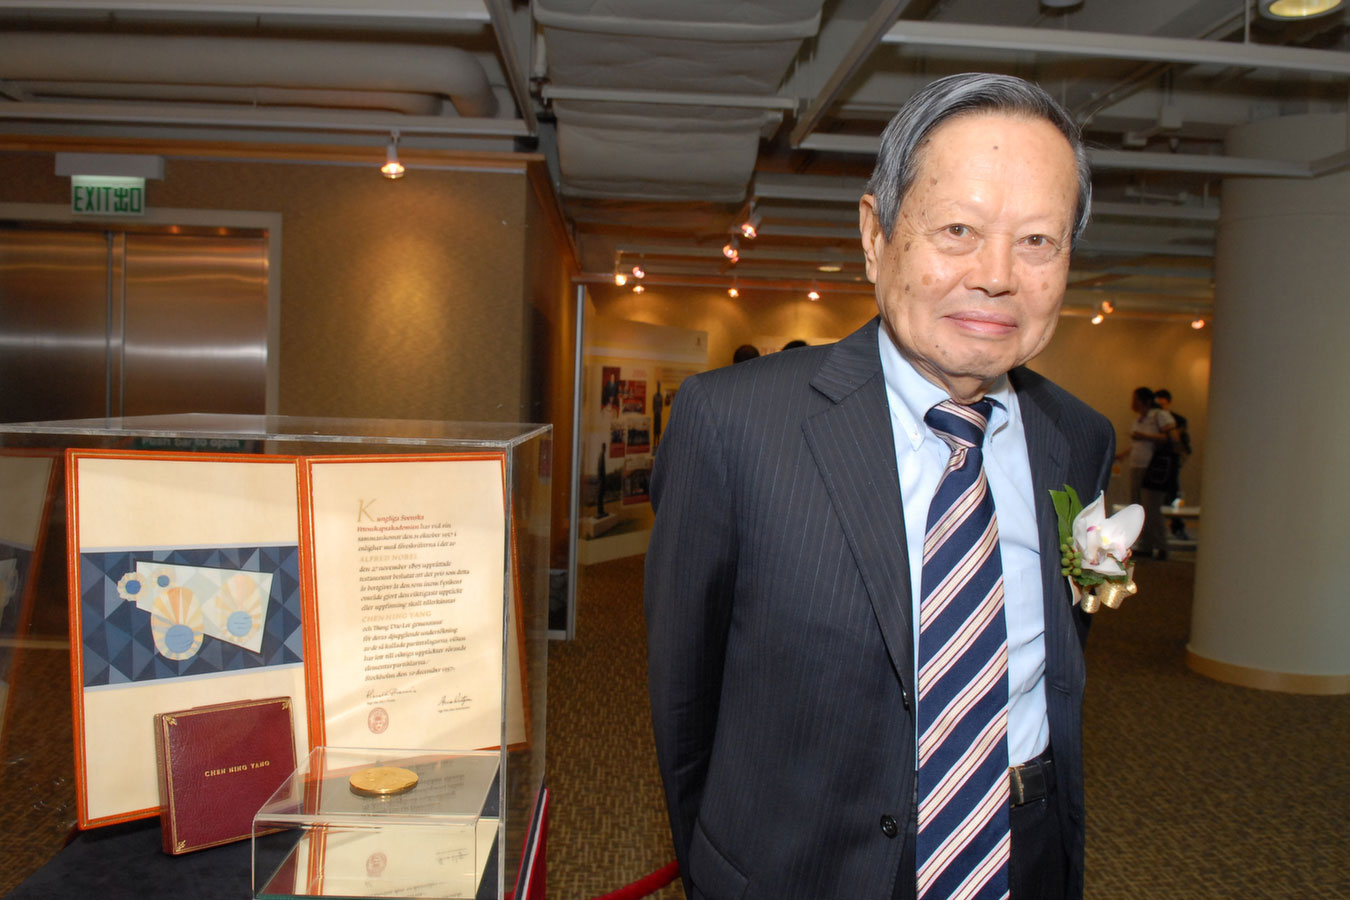 中文大学博文讲座教授杨振宁教授为首位华人诺贝尔奖得主。杨教授对二十世纪中叶以来的物理学发展，尤其是粒子和统计学物理的领域，产生了深远的影响。